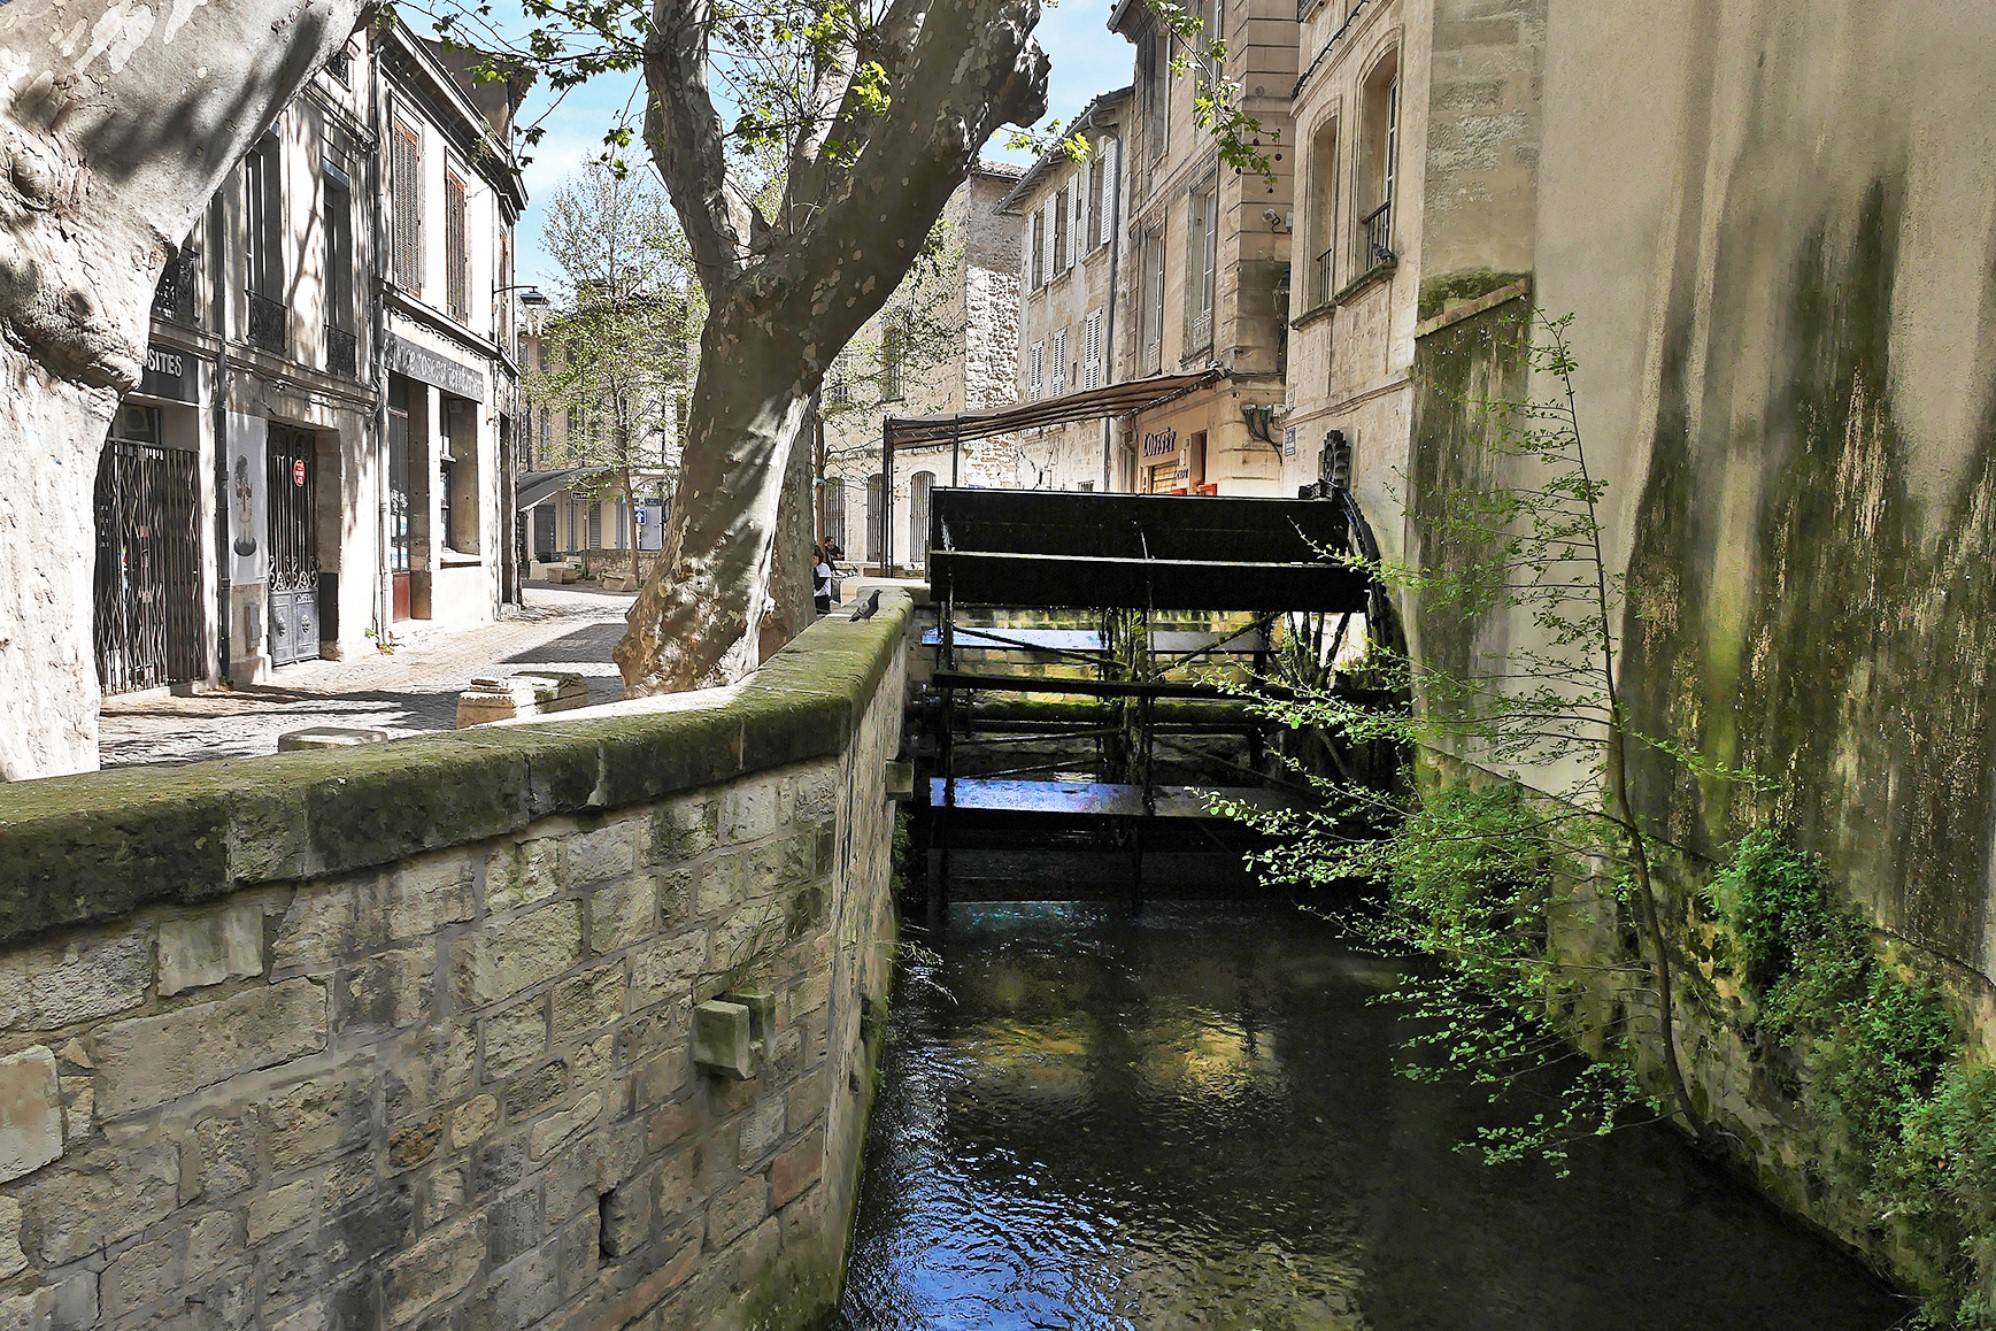 Vente Loft de charme avec loggia au cœur de la vieille ville d'Avignon